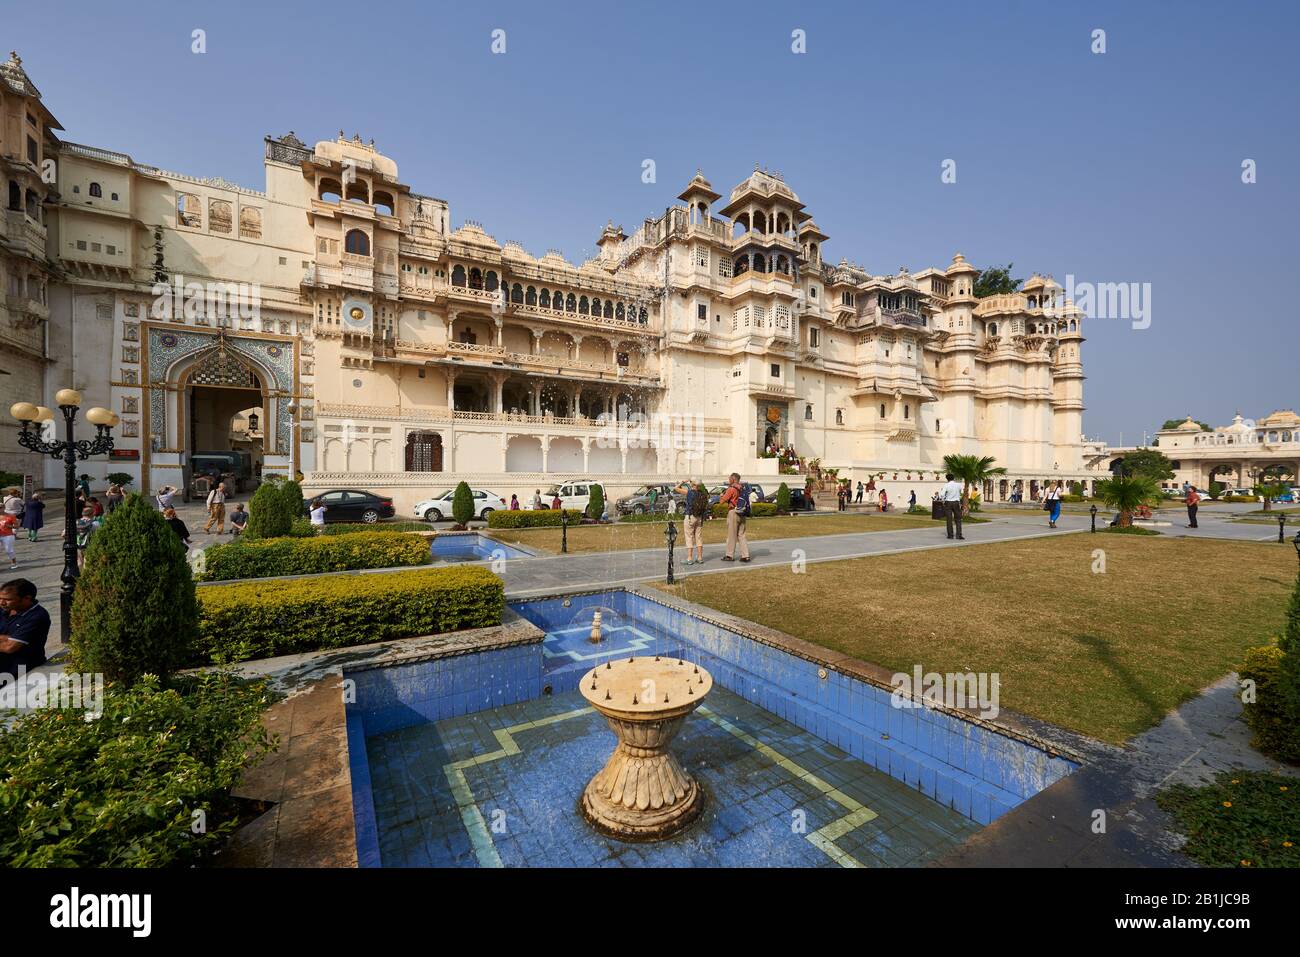 Außenansicht des Stadtpalasts von Udaipur, Rajasthan, Indien Stockfoto